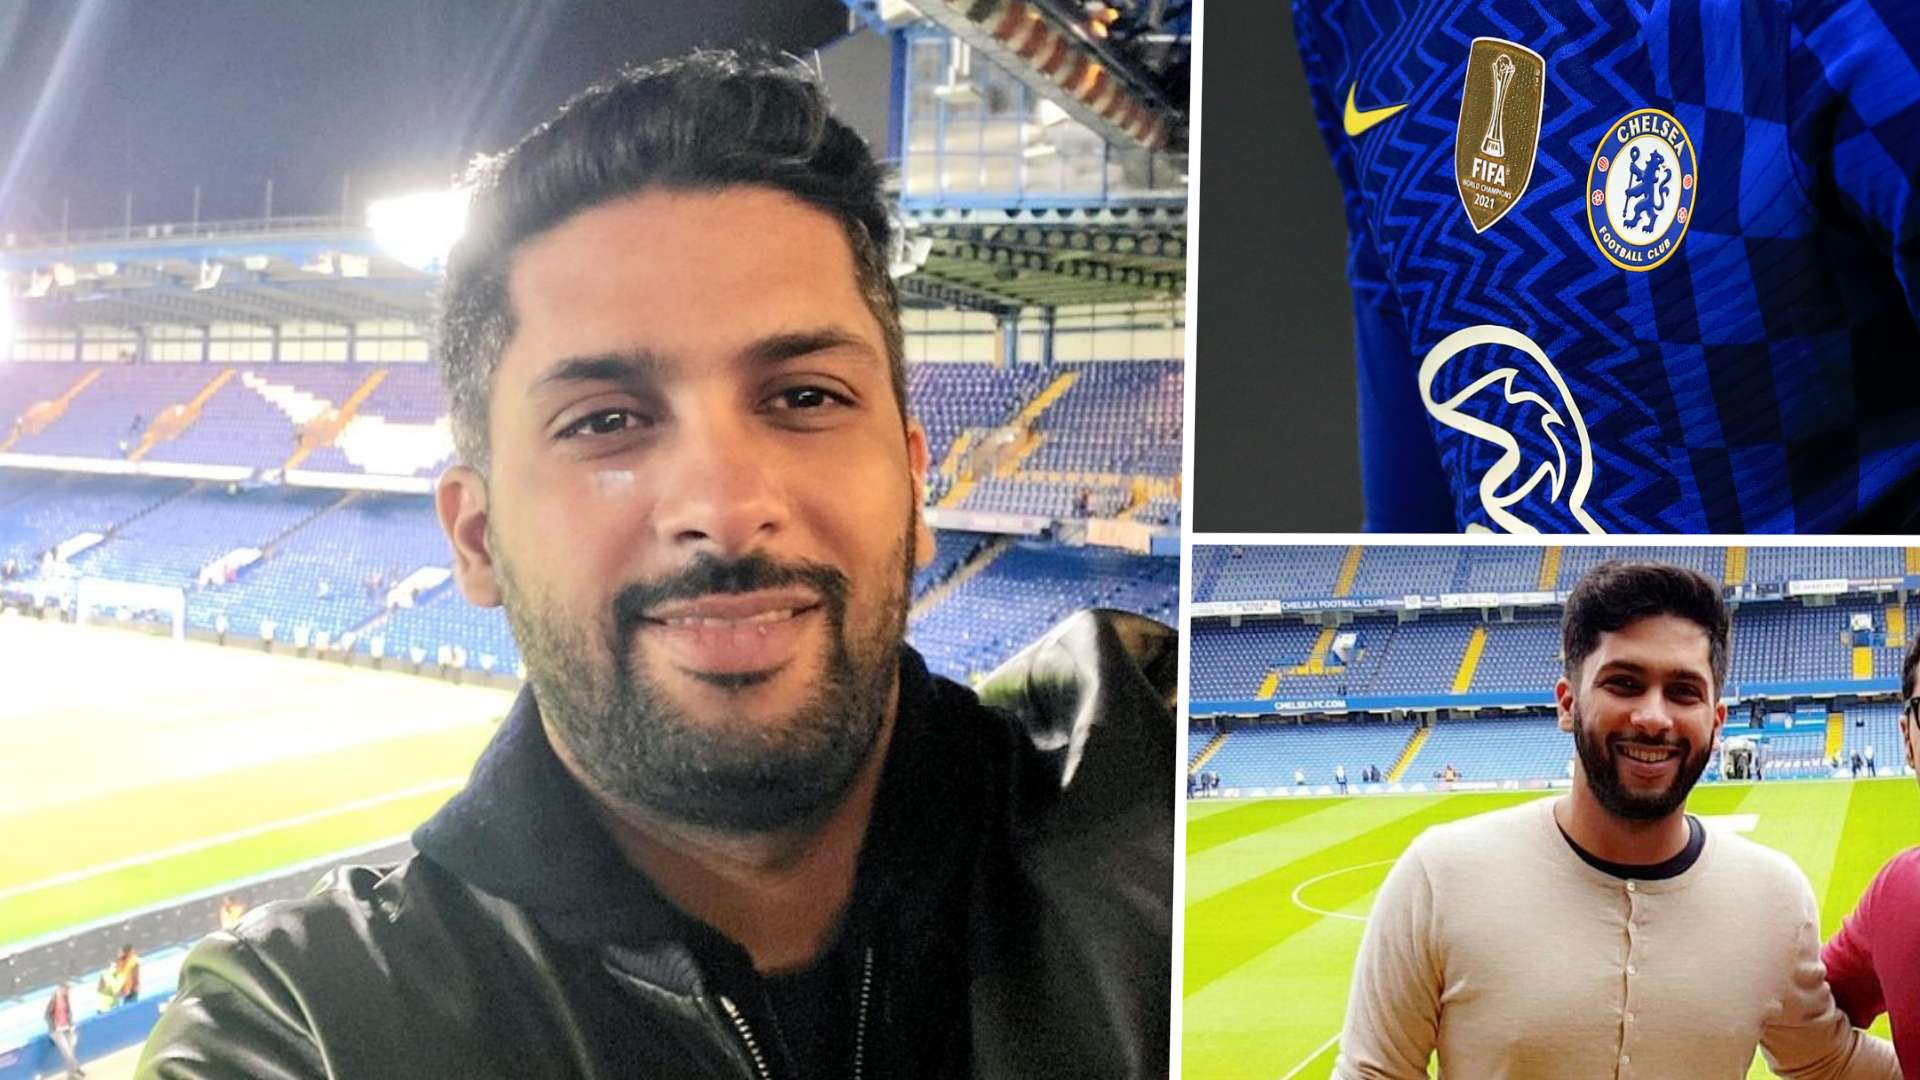 Mohamed Alkhereiji possible future Chelsea owner